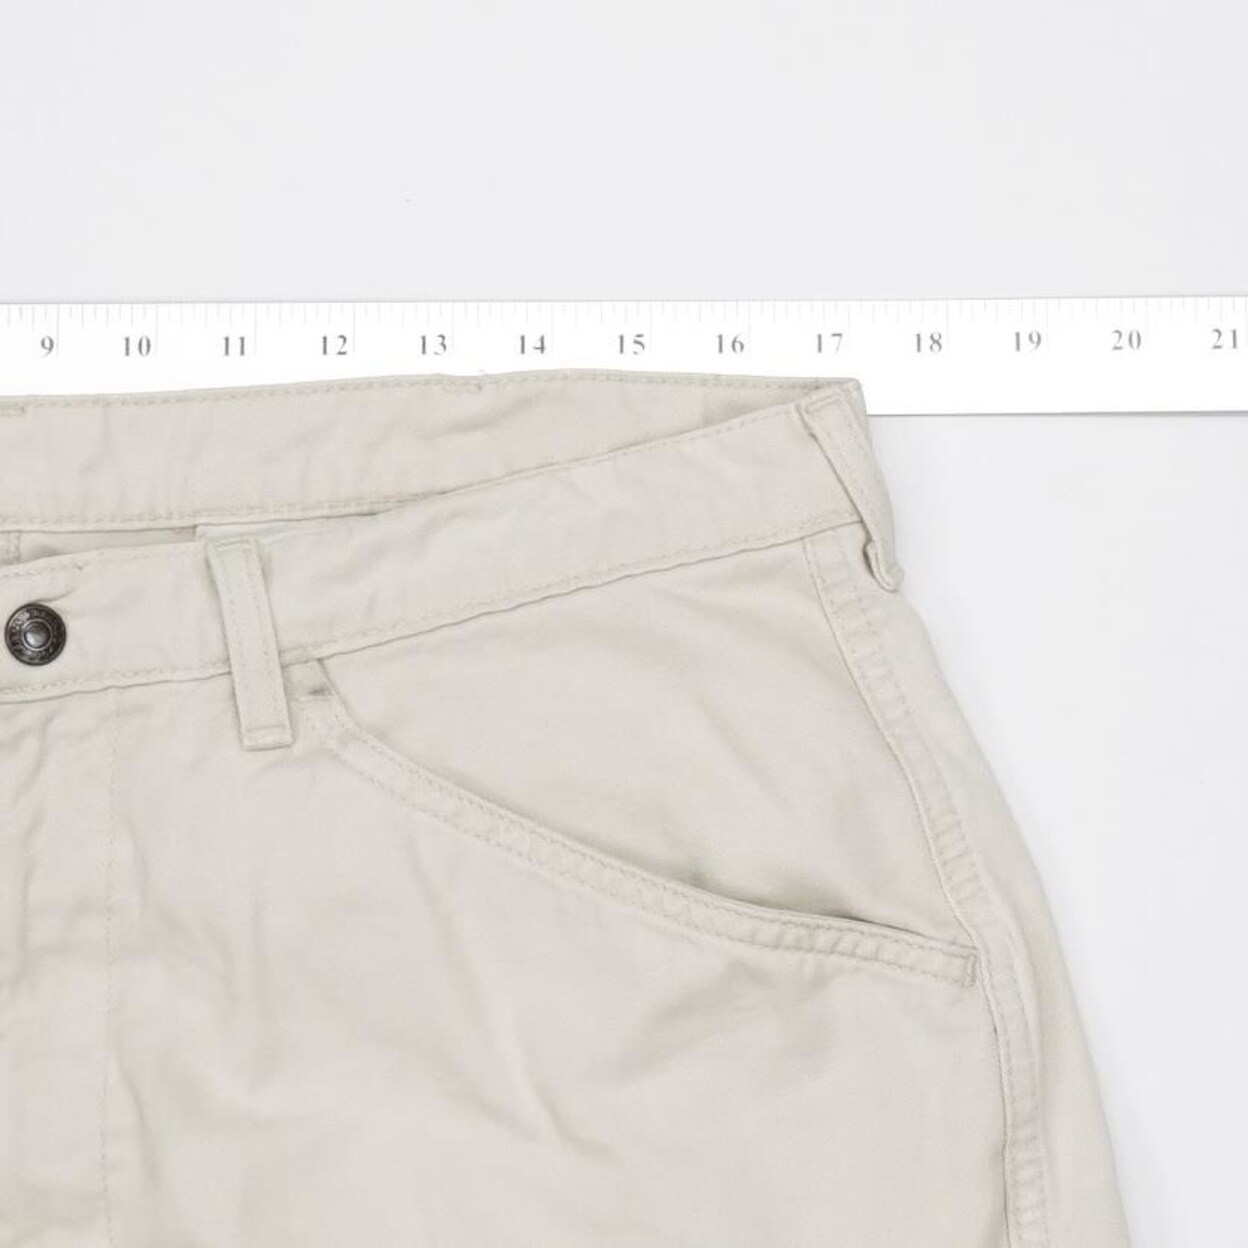 polo jeans company cargo shorts